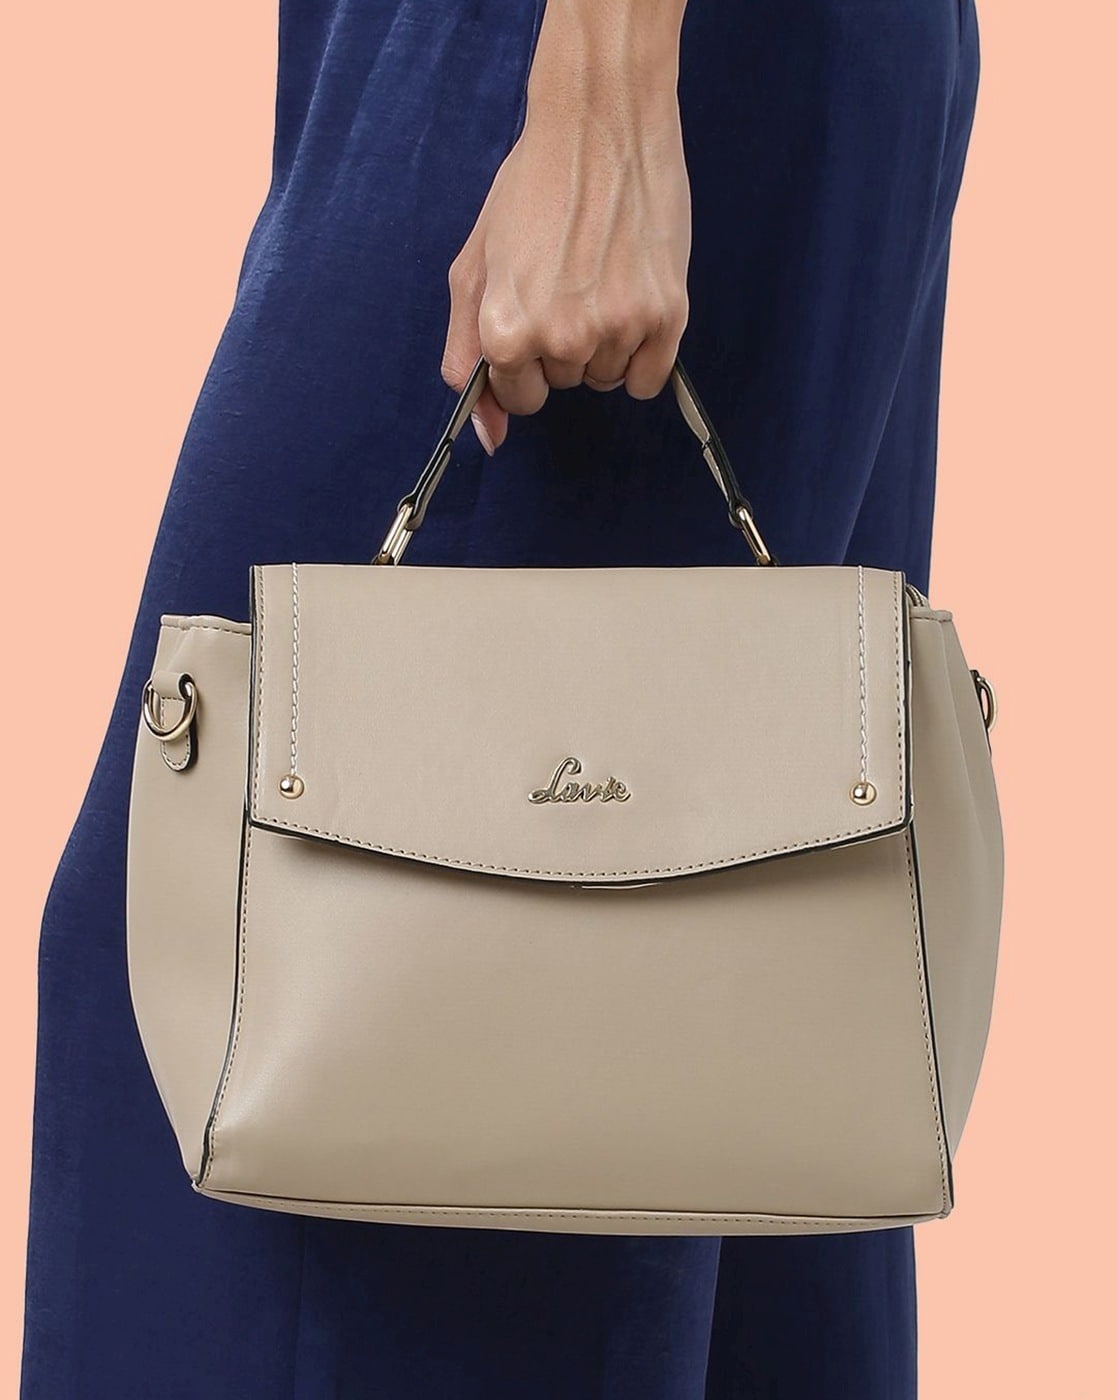 Buy Beige Handbags for Women by Lavie Online